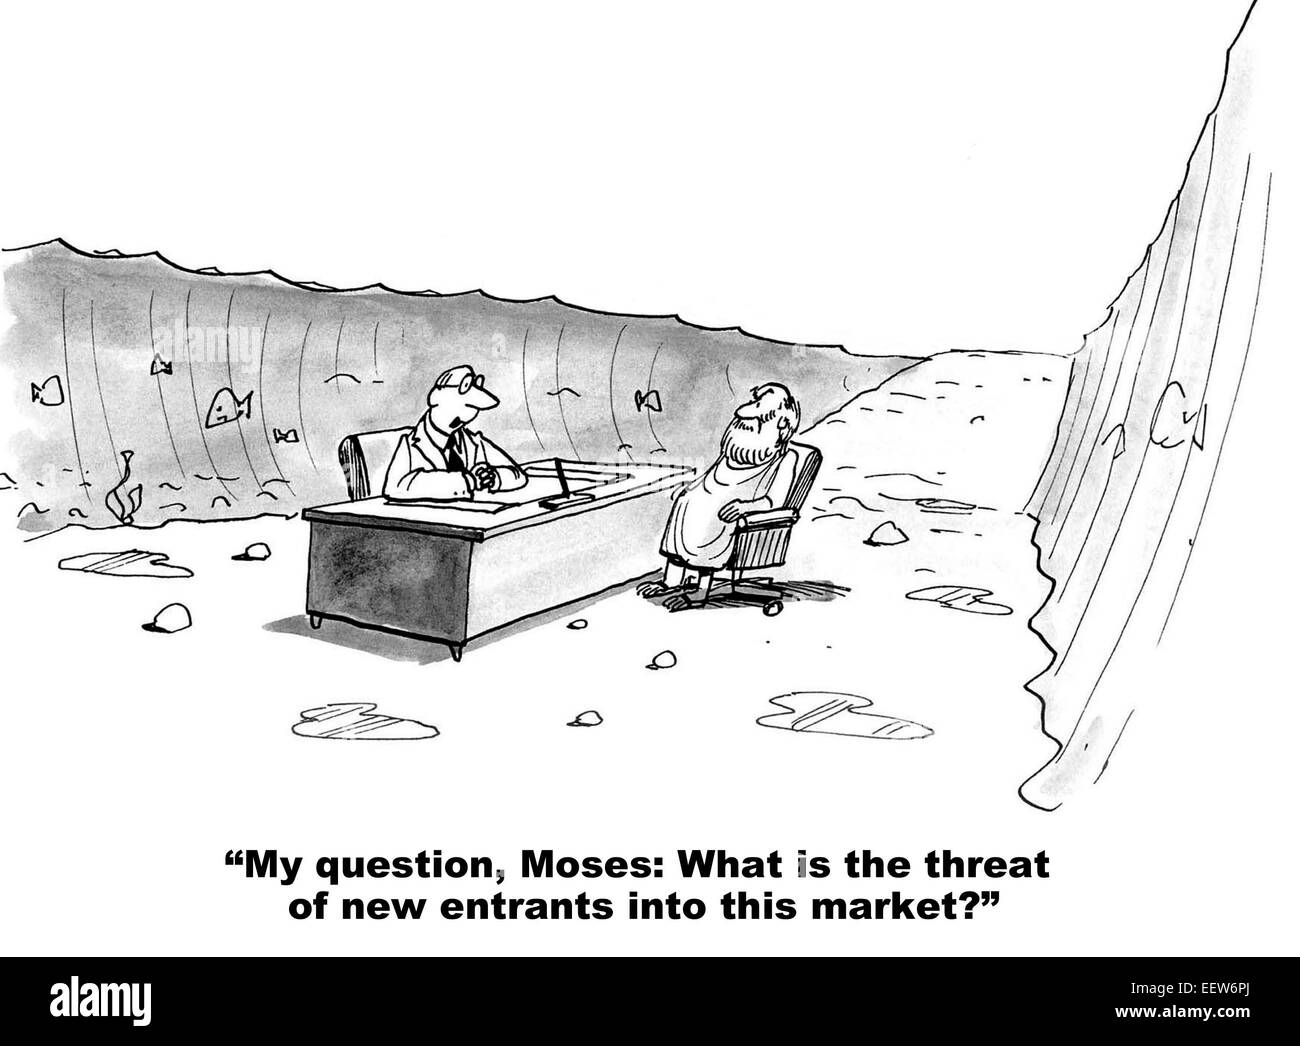 Cartoon zeigt einen Geschäftsmann in einer Besprechung mit Moses und Moses zu Fragen, was die Bedrohung durch neue Marktteilnehmer in diesem Markt ist. Stockfoto